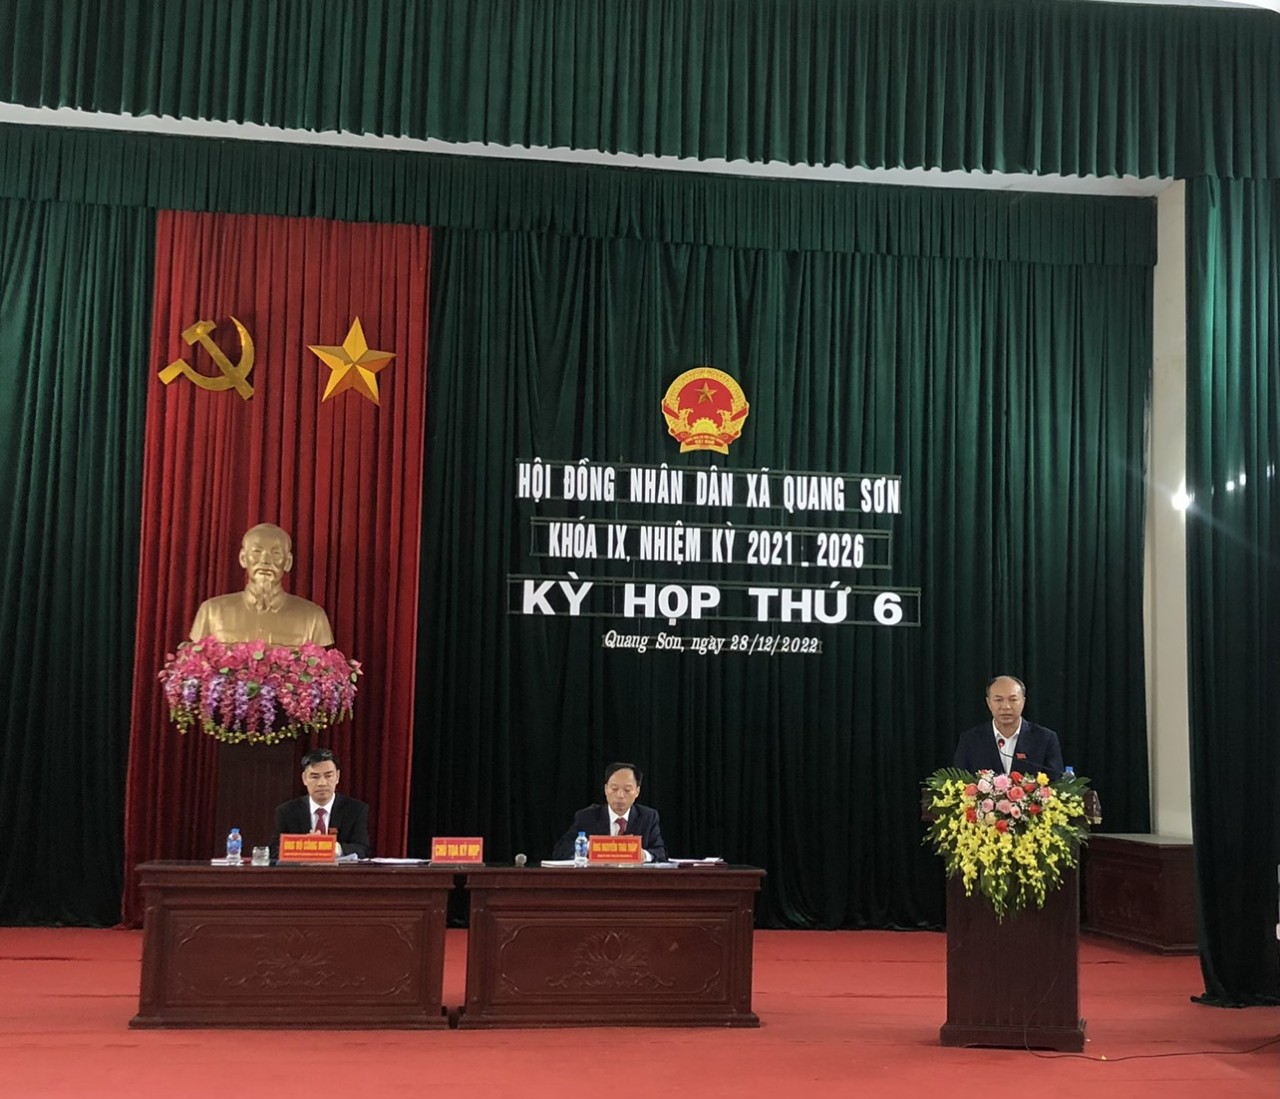 HĐND xã Quang Sơn khóa IX nhiệm kỳ 2021 -2026 đã tổ chức kỳ họp thứ 6.